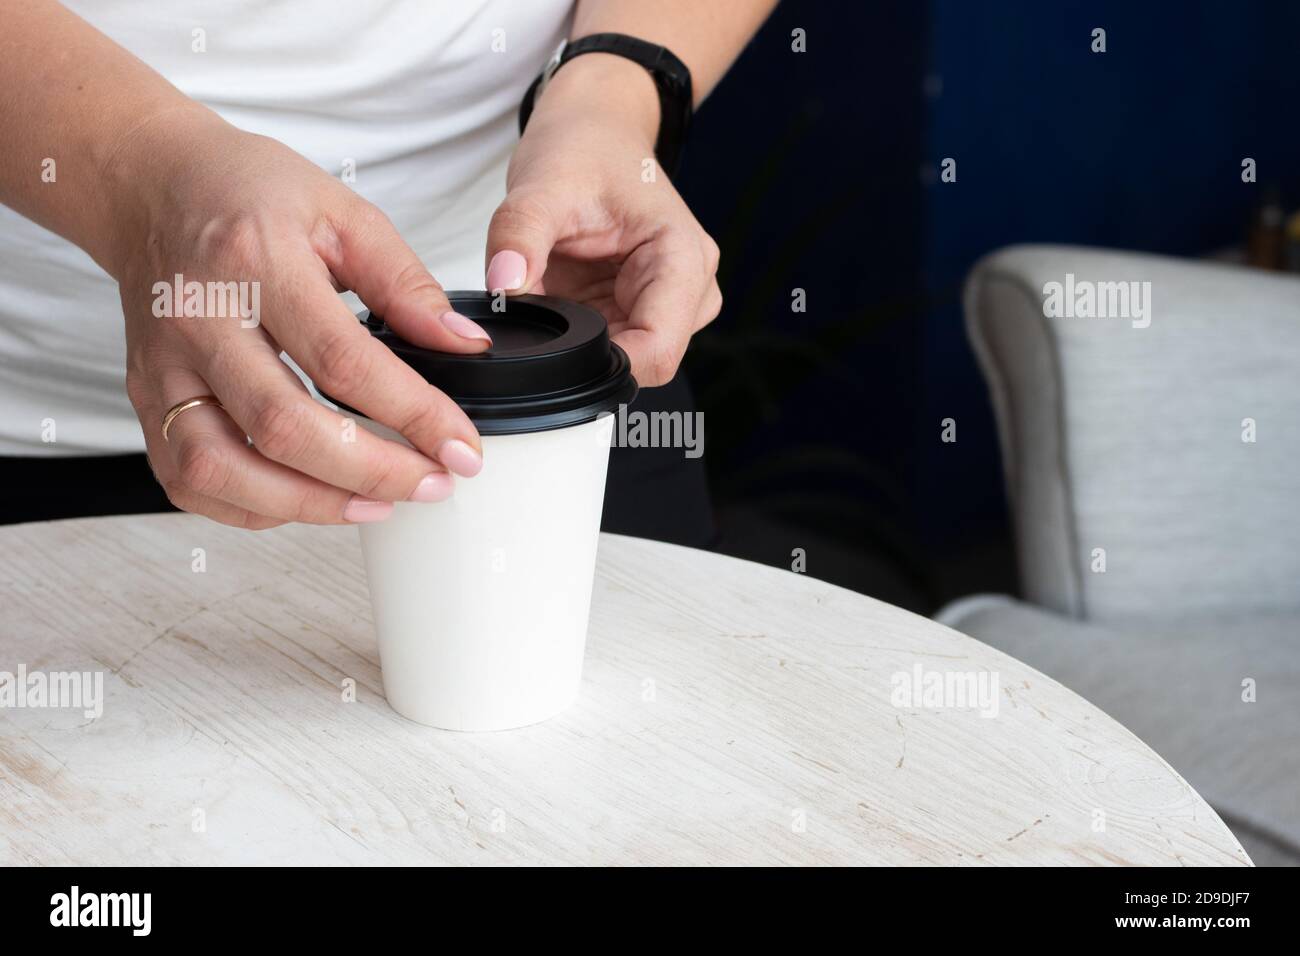 Weibliche Hände legen einen schwarzen Deckel auf eine weiße Papiertasse mit heißem Kaffee oder Tee, um draußen, Nahaufnahme genommen werden Stockfoto